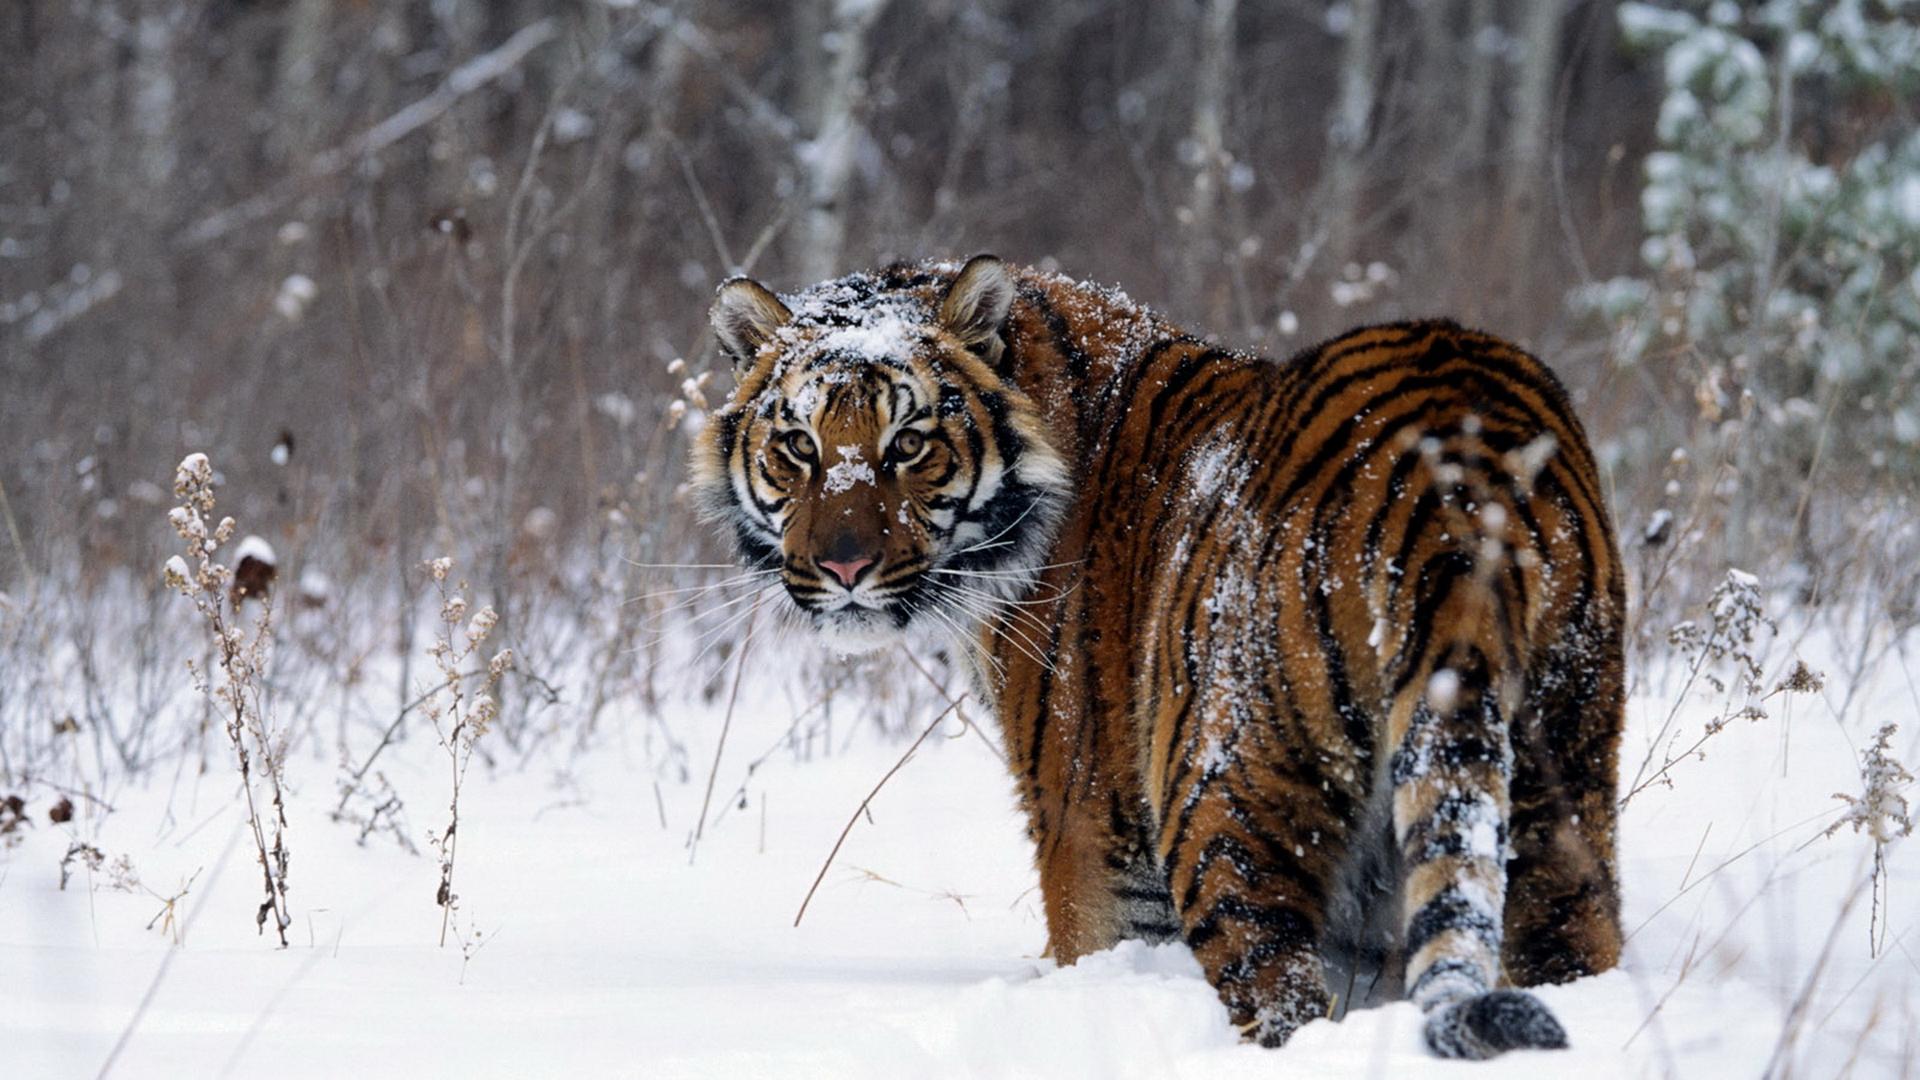 Snow Tiger HD Wallpaper | 1920x1080 | ID:40881